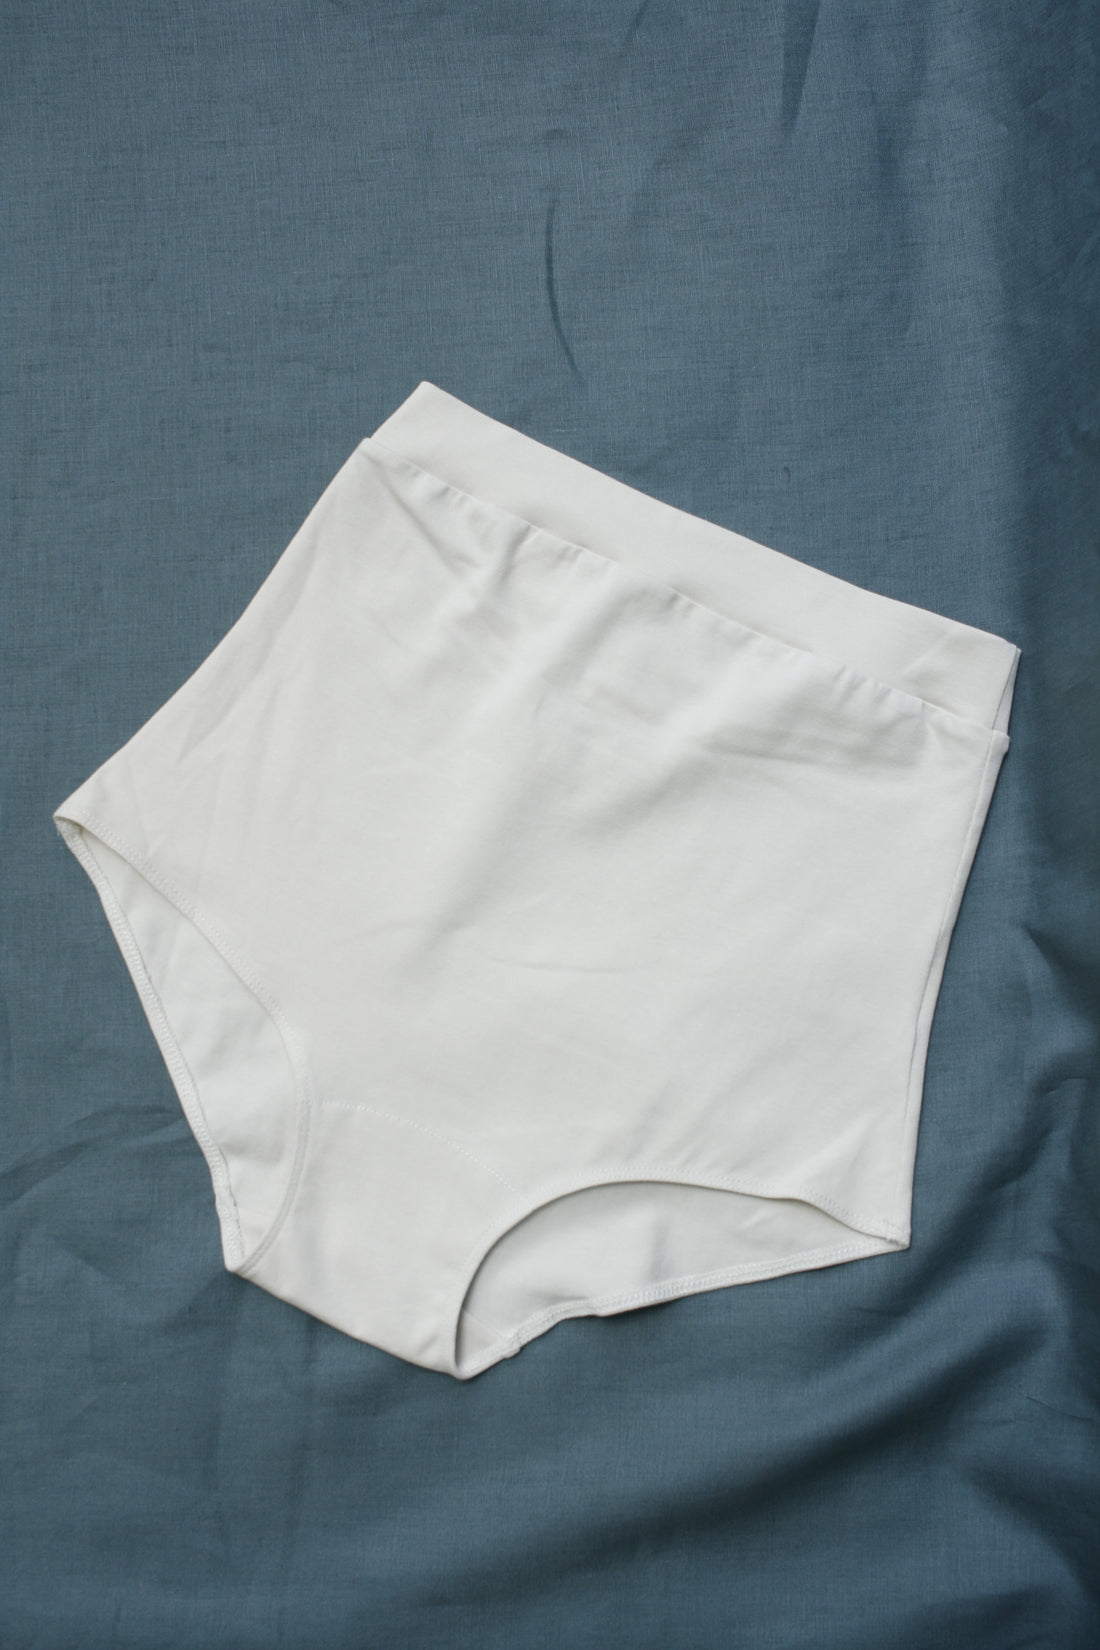 Benirap Womens Knickers Ladies High Waisted Cotton Underwear